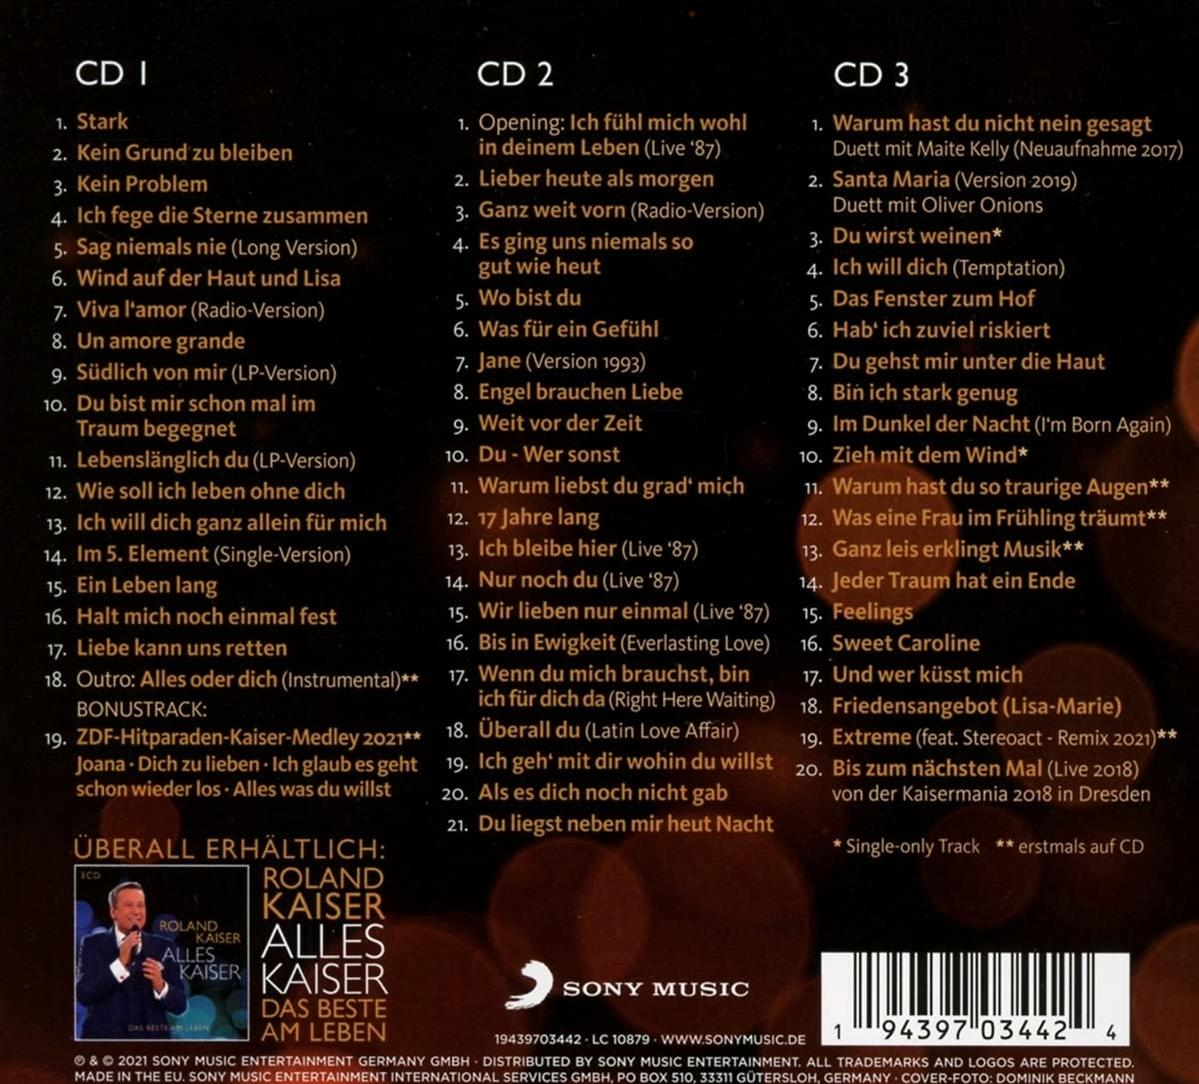 (Stark (CD) wie - Kaiser Kaiser nie) Roland - 2 Alles